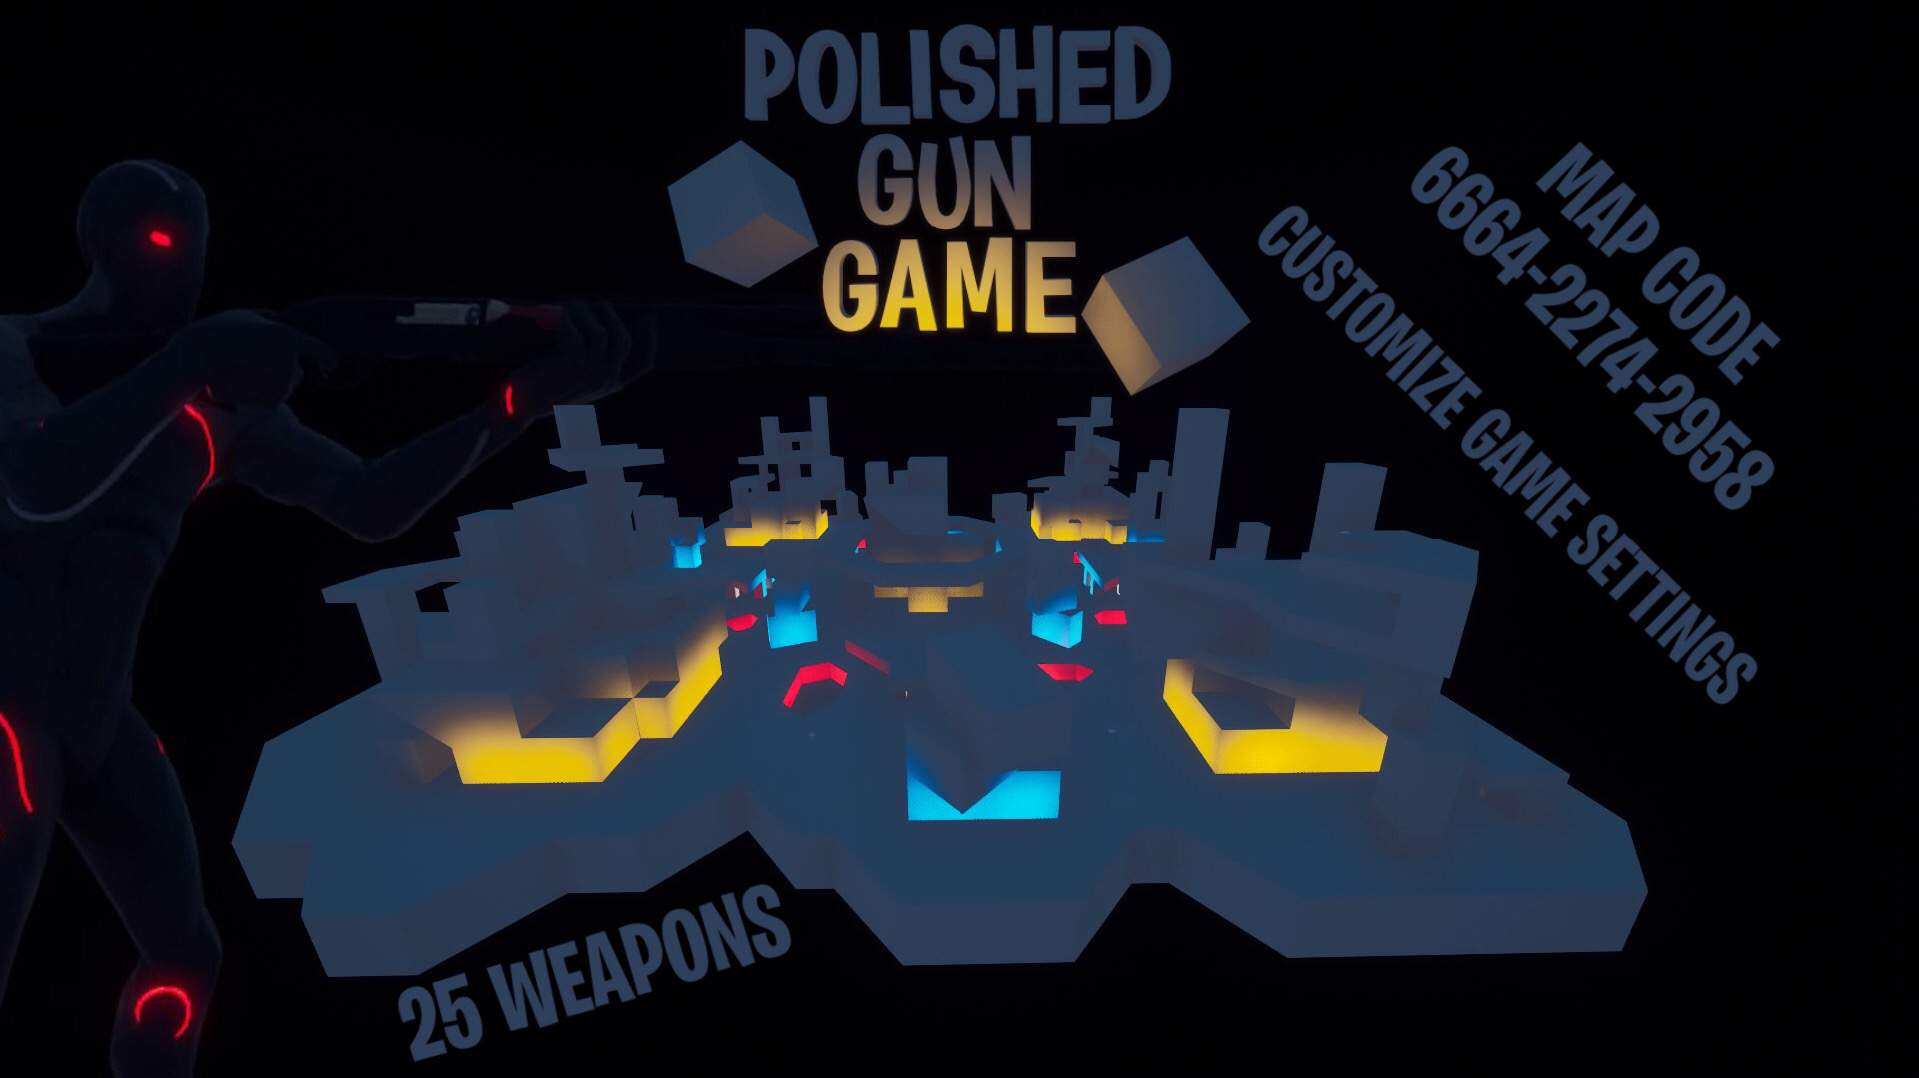 POLISHED GUN GAME